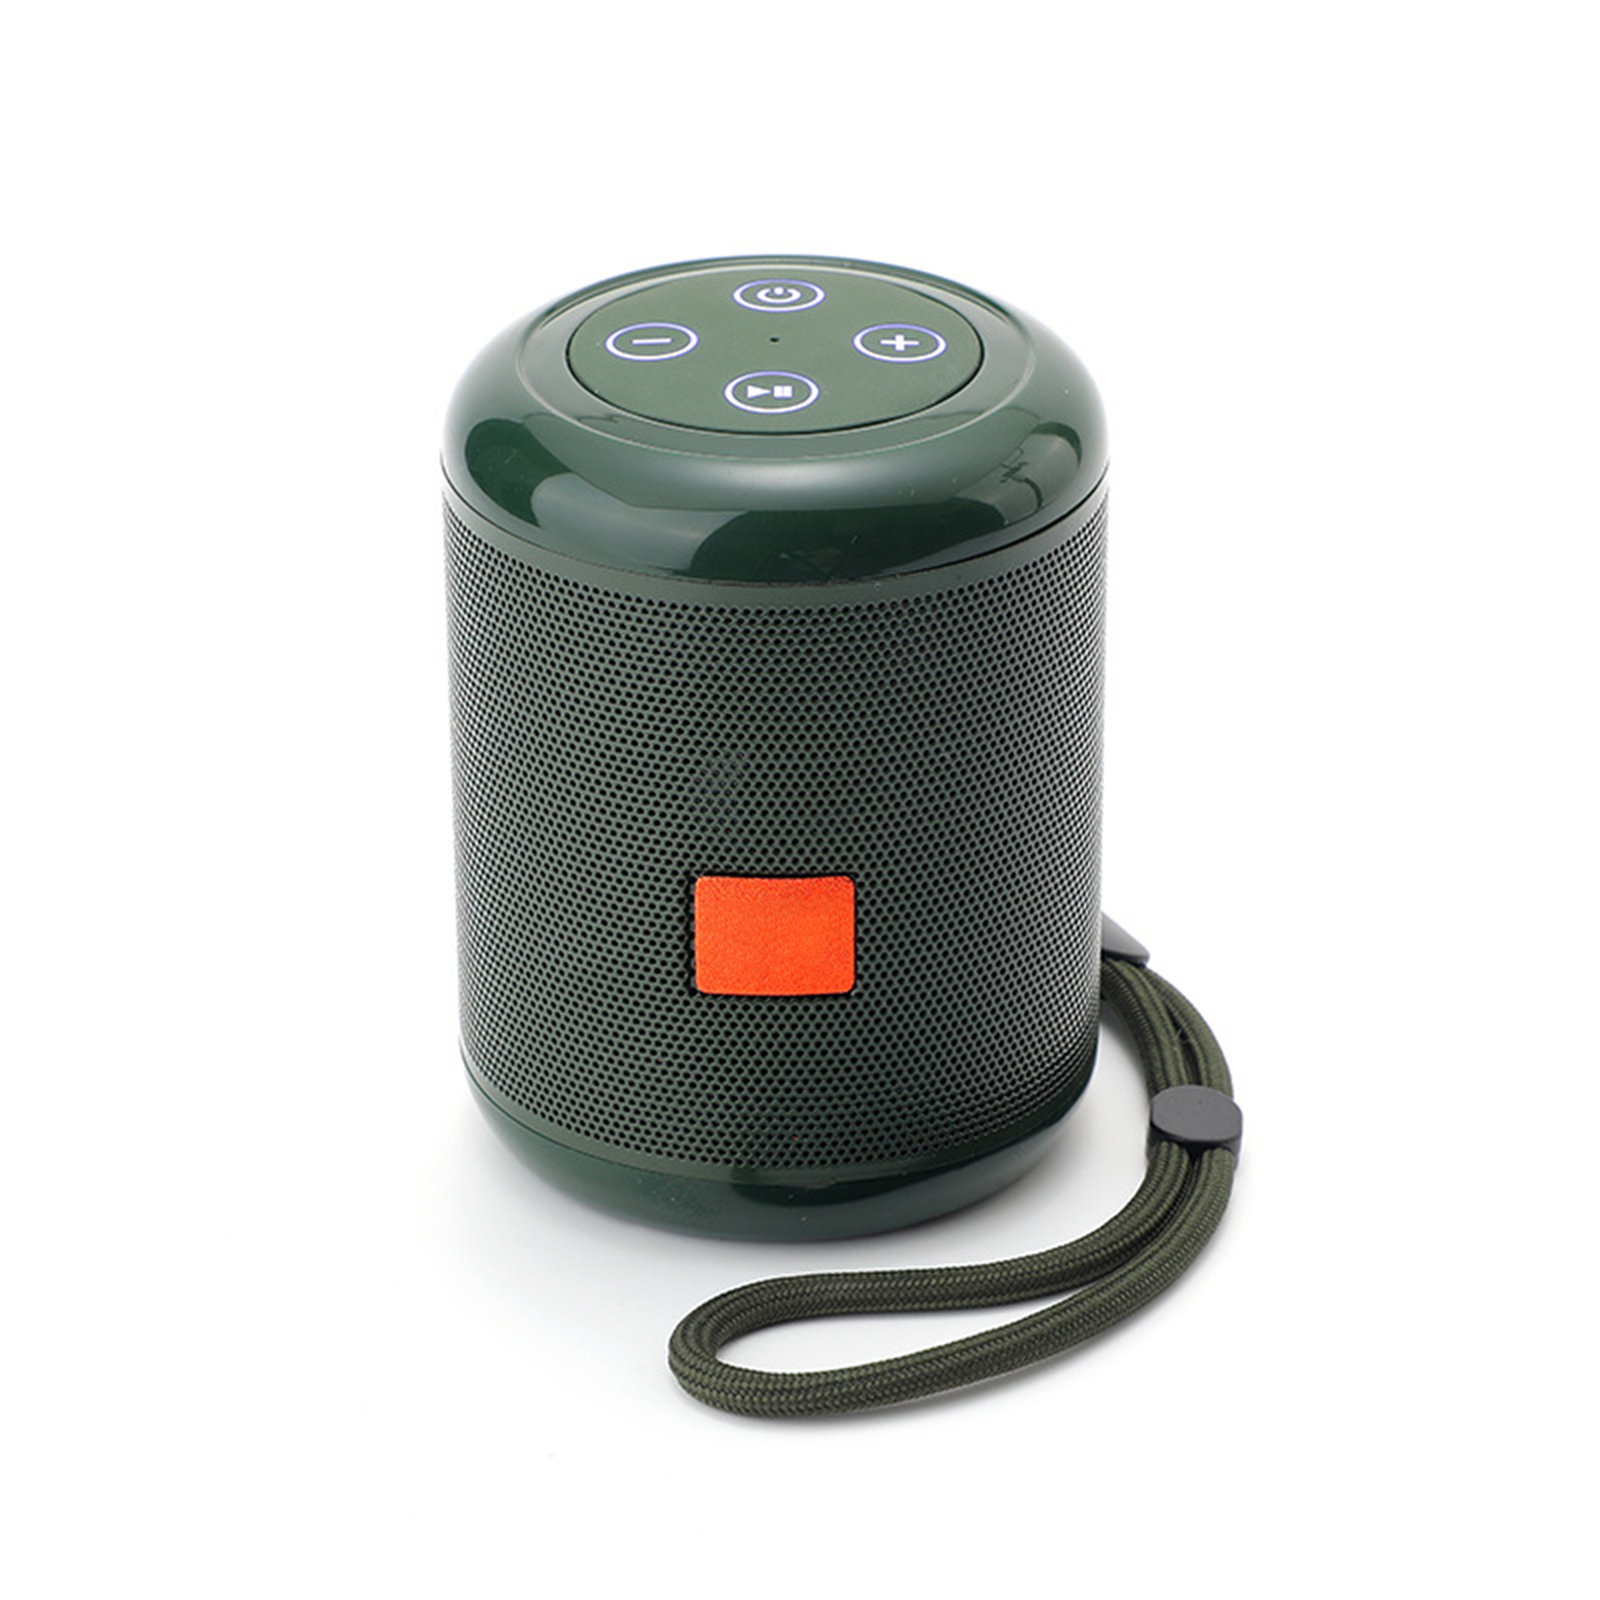 TG519 Portable Speaker Mini Wireless Speaker 10M Wireless Range USB Disk TF Card Player For Phones Travel Hiking Car